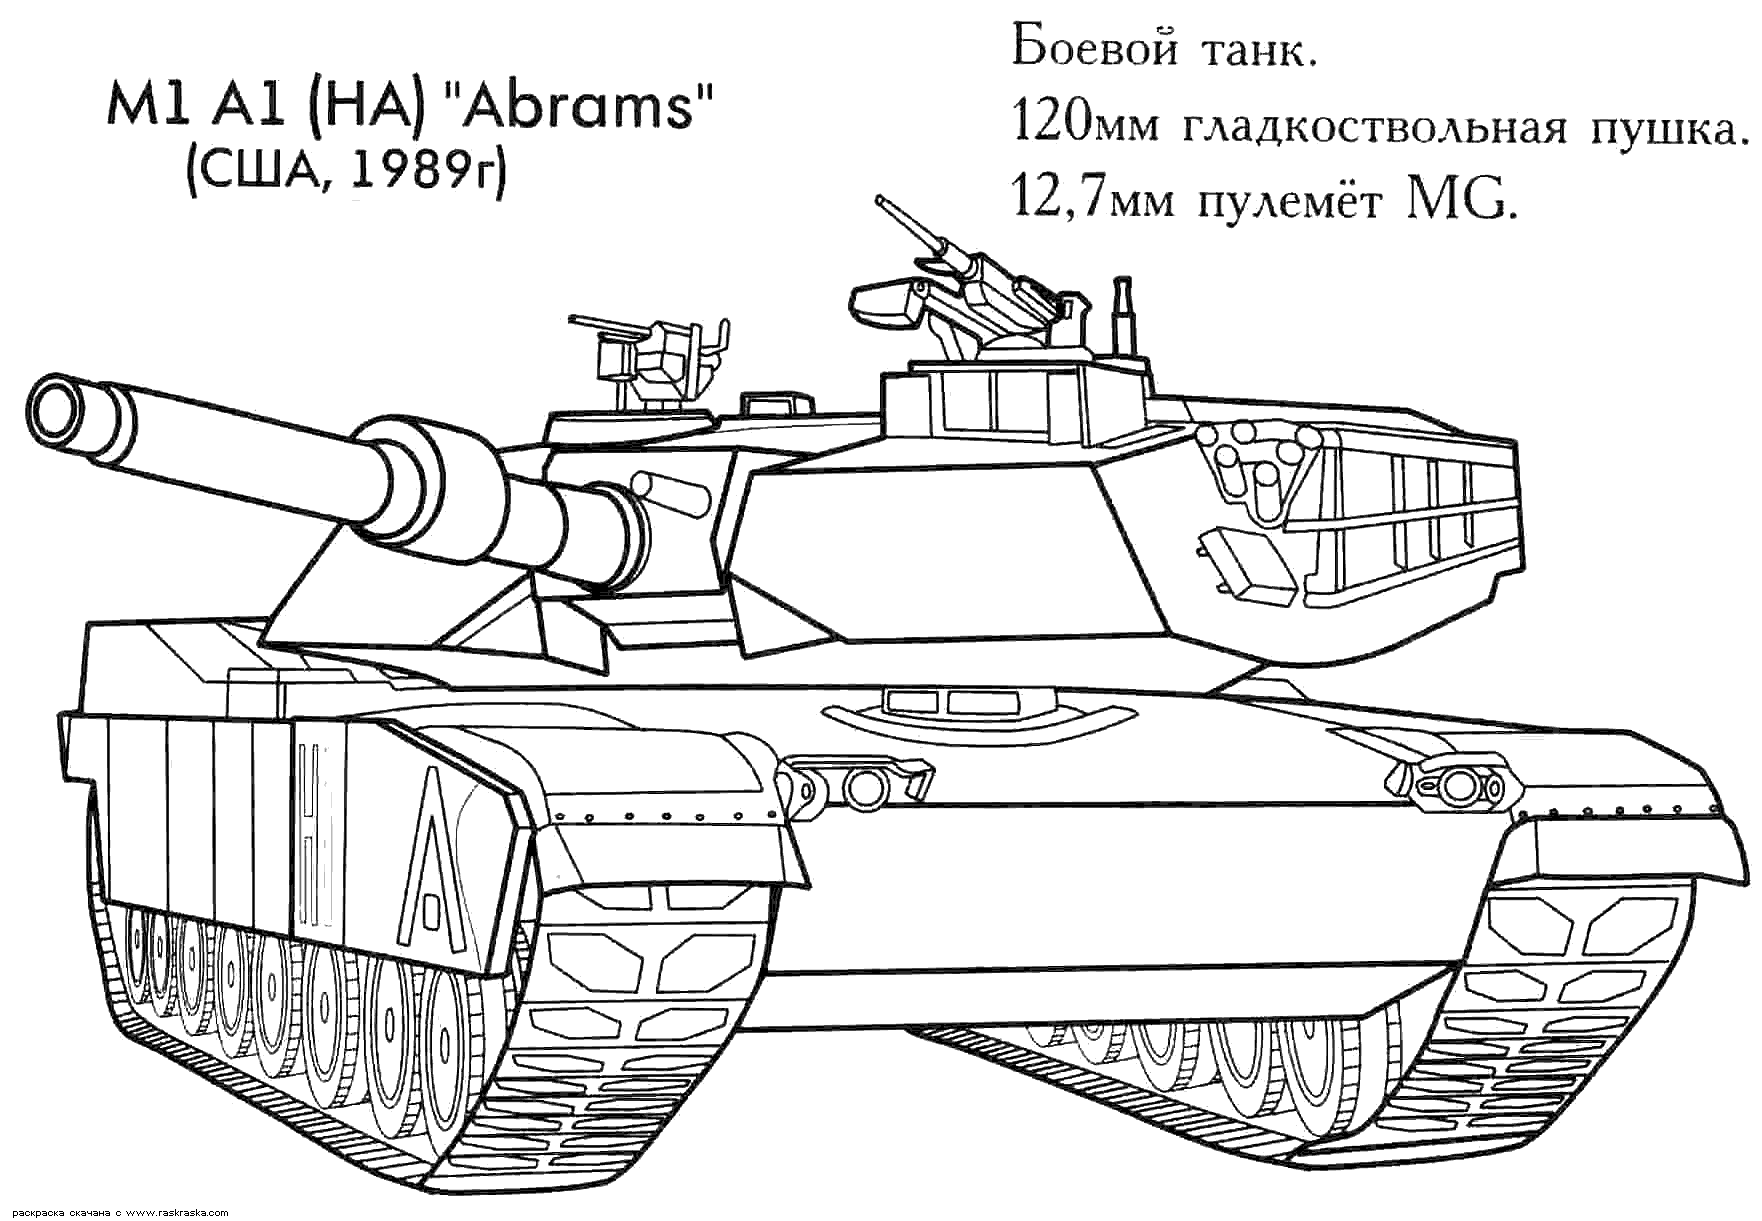 Ёоевой танк "Abrams"